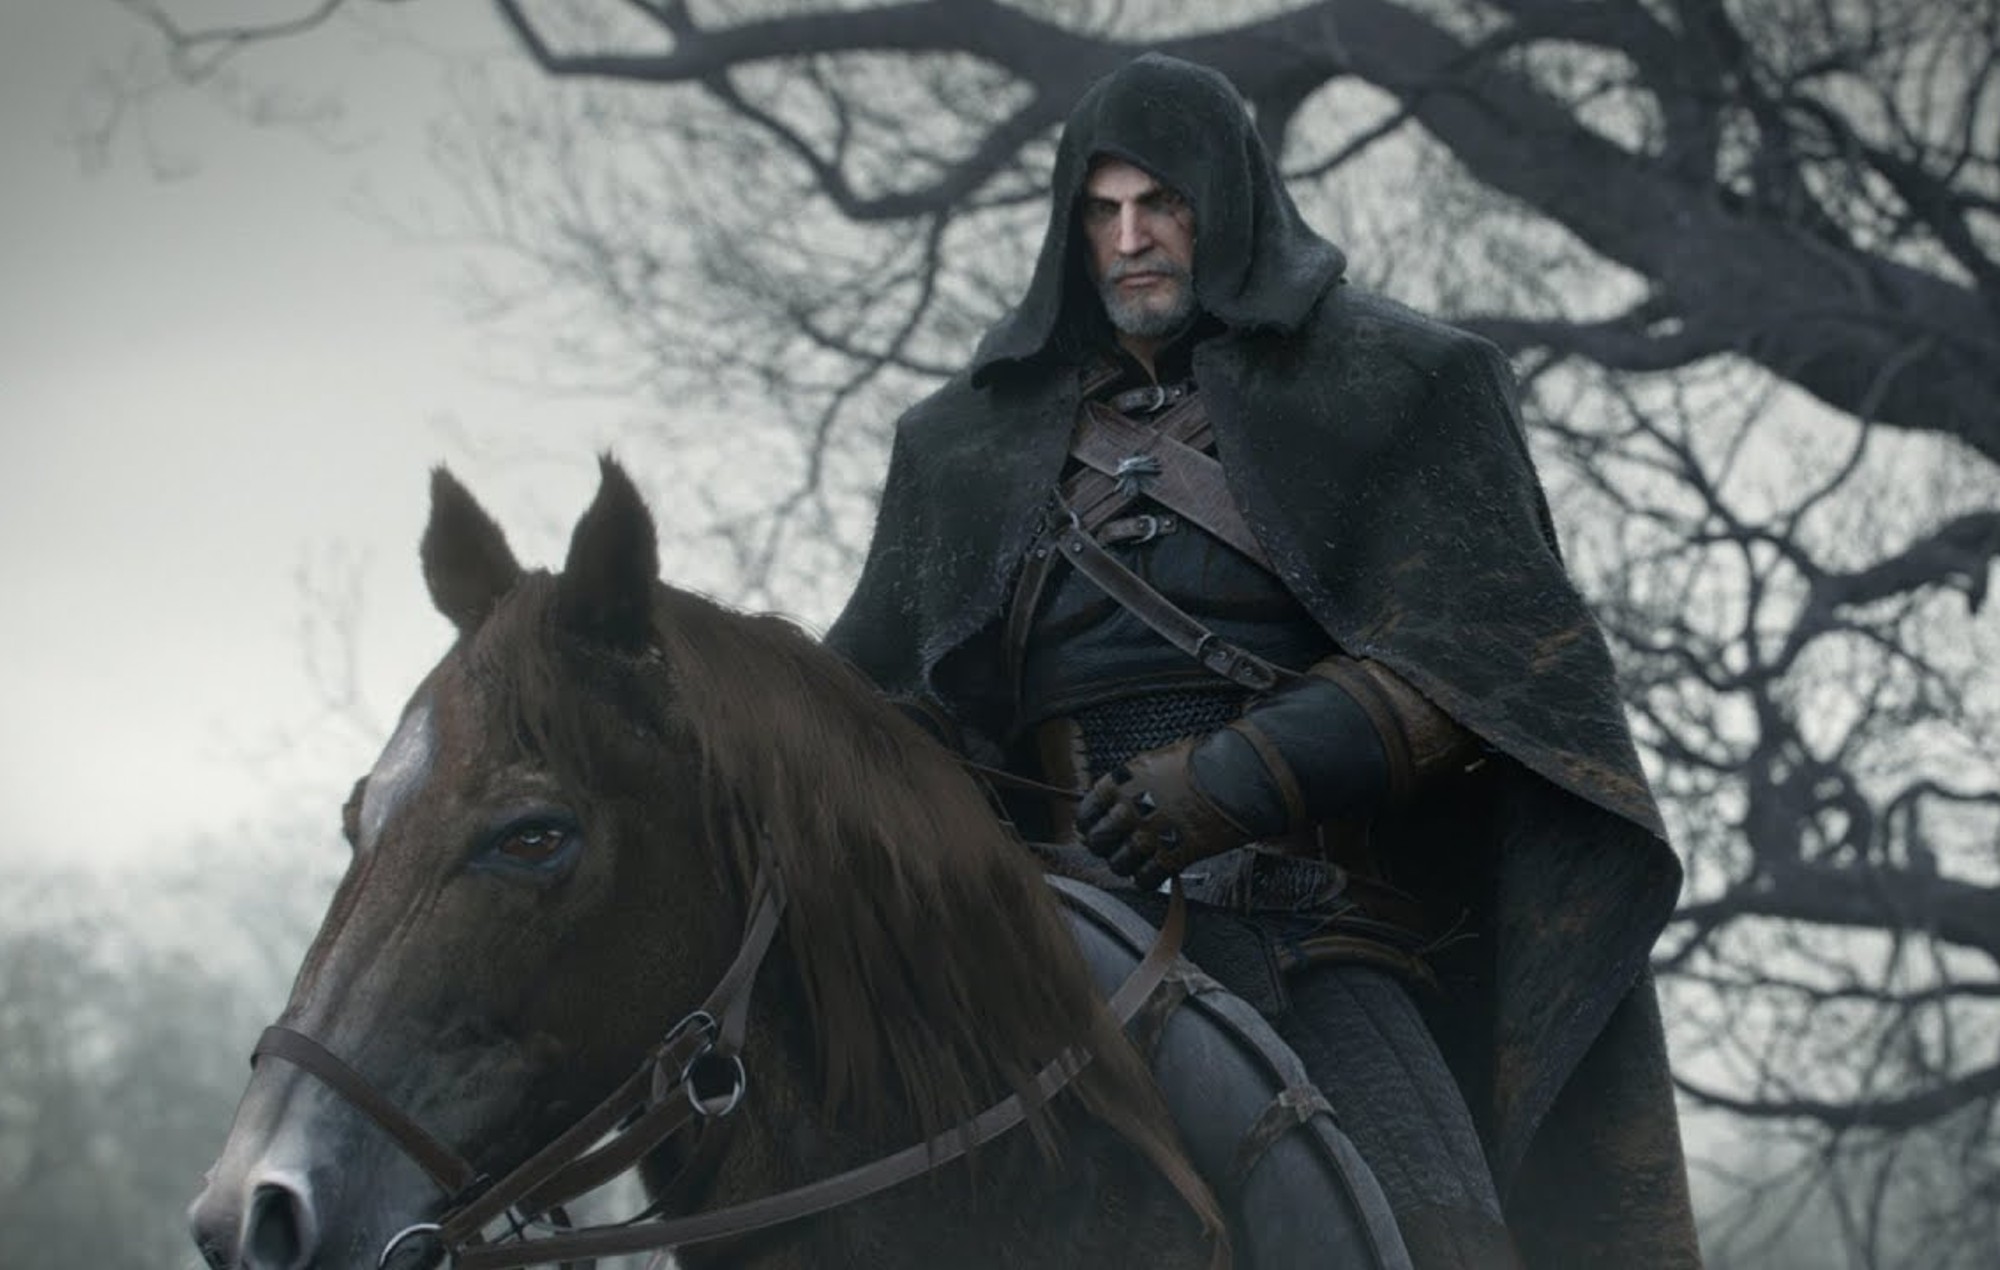 Une capture d'écran de la bande-annonce cinématographique de The Witcher 3: Wild Hunt mettant en vedette Geralt de Riv à cheval